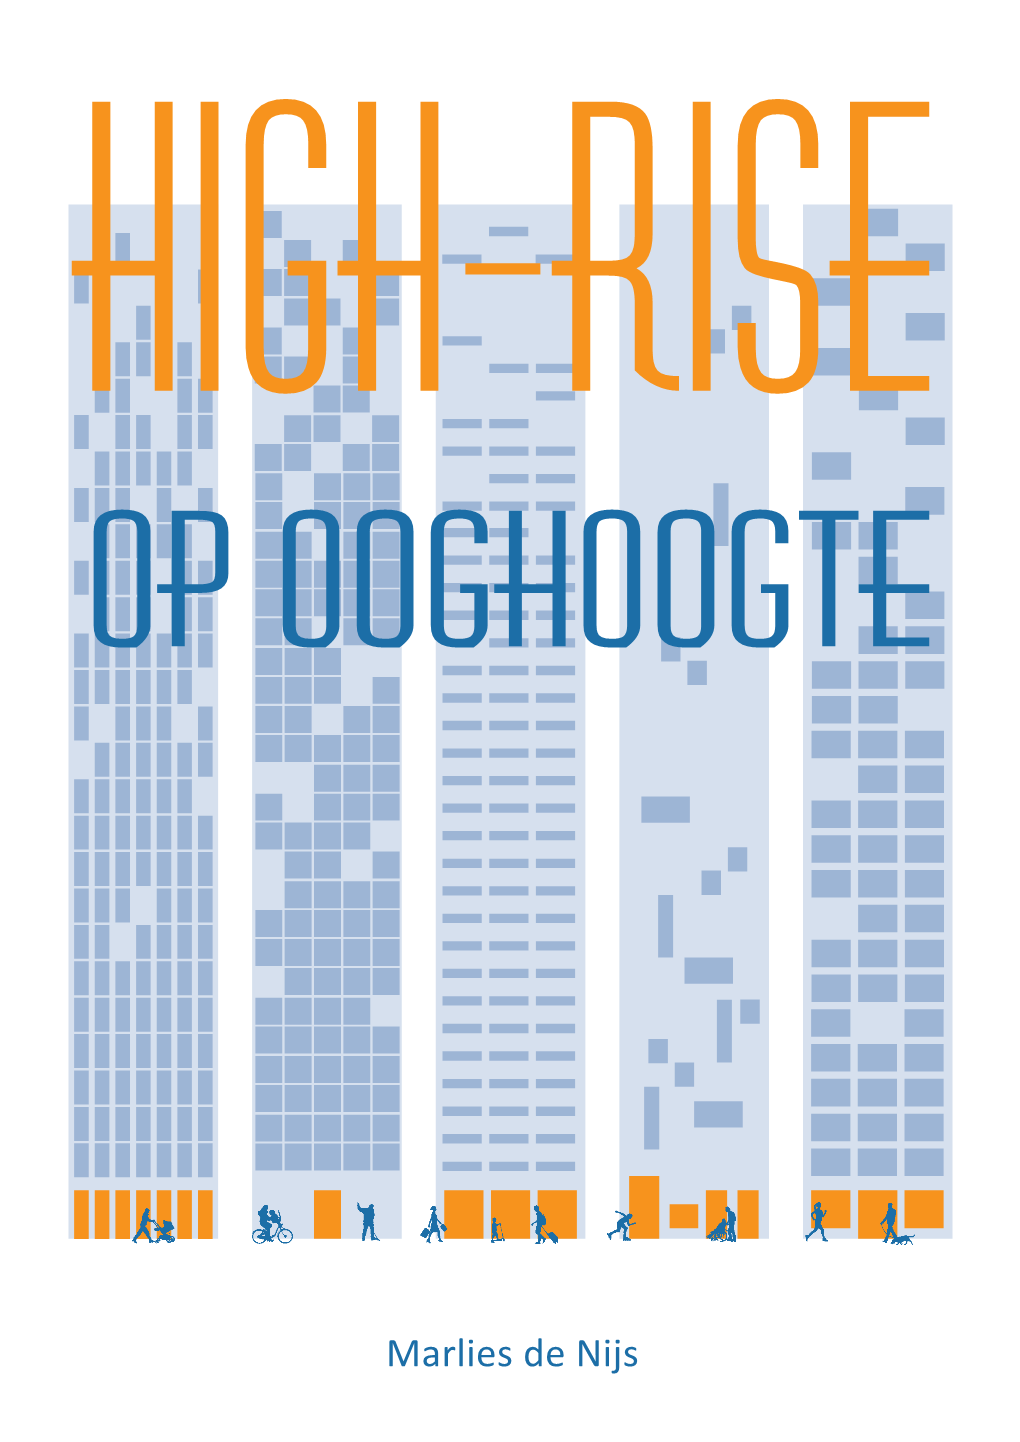 High-Rise Op Ooghoogte